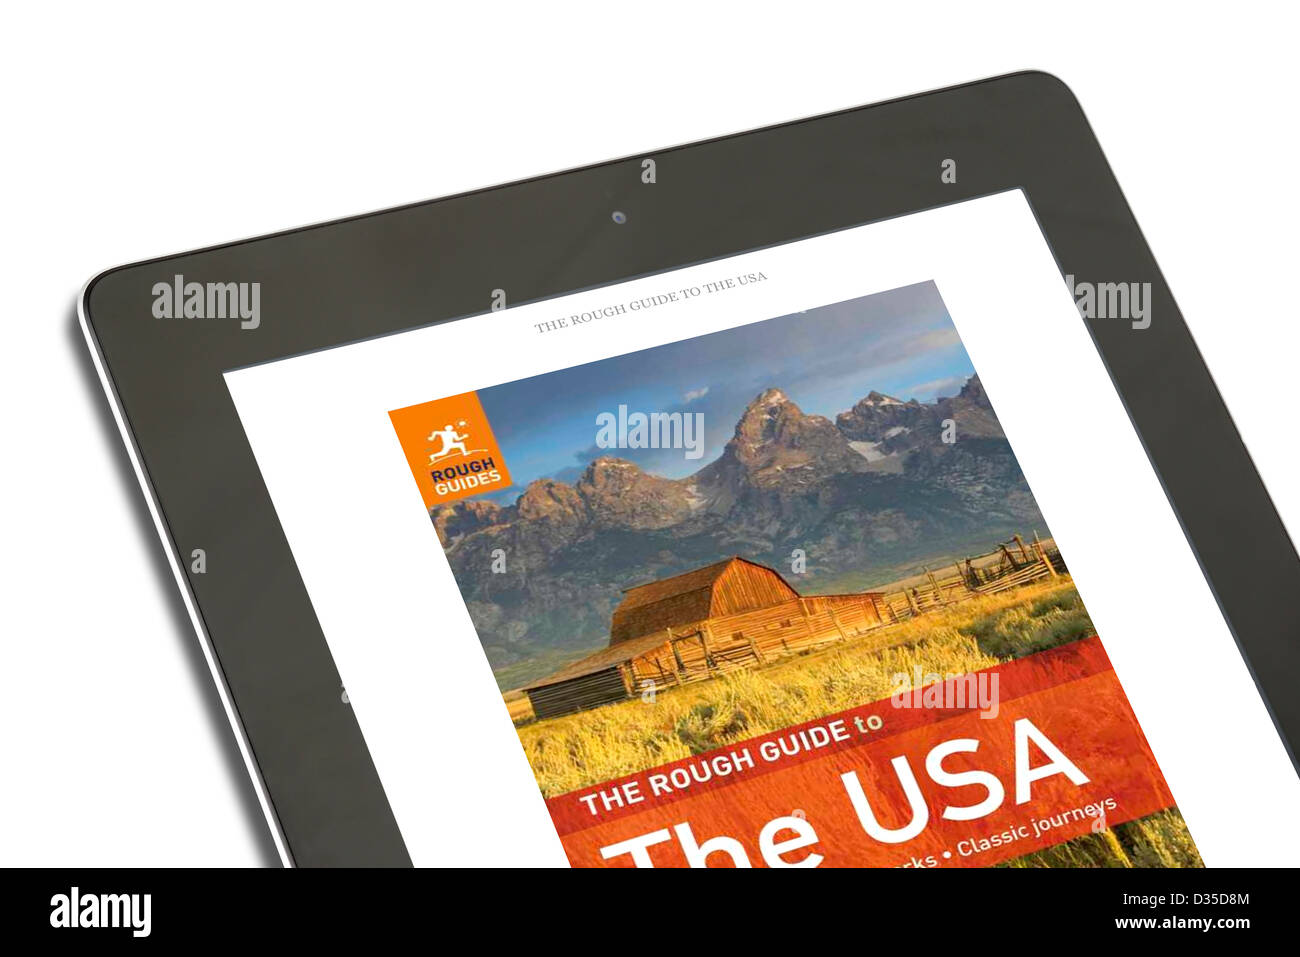 Einem Buch Rough Guide Reisen mit der Kindle-app auf einem Apple iPad 4. Genration Retina Display Tablettcomputer Stockfoto